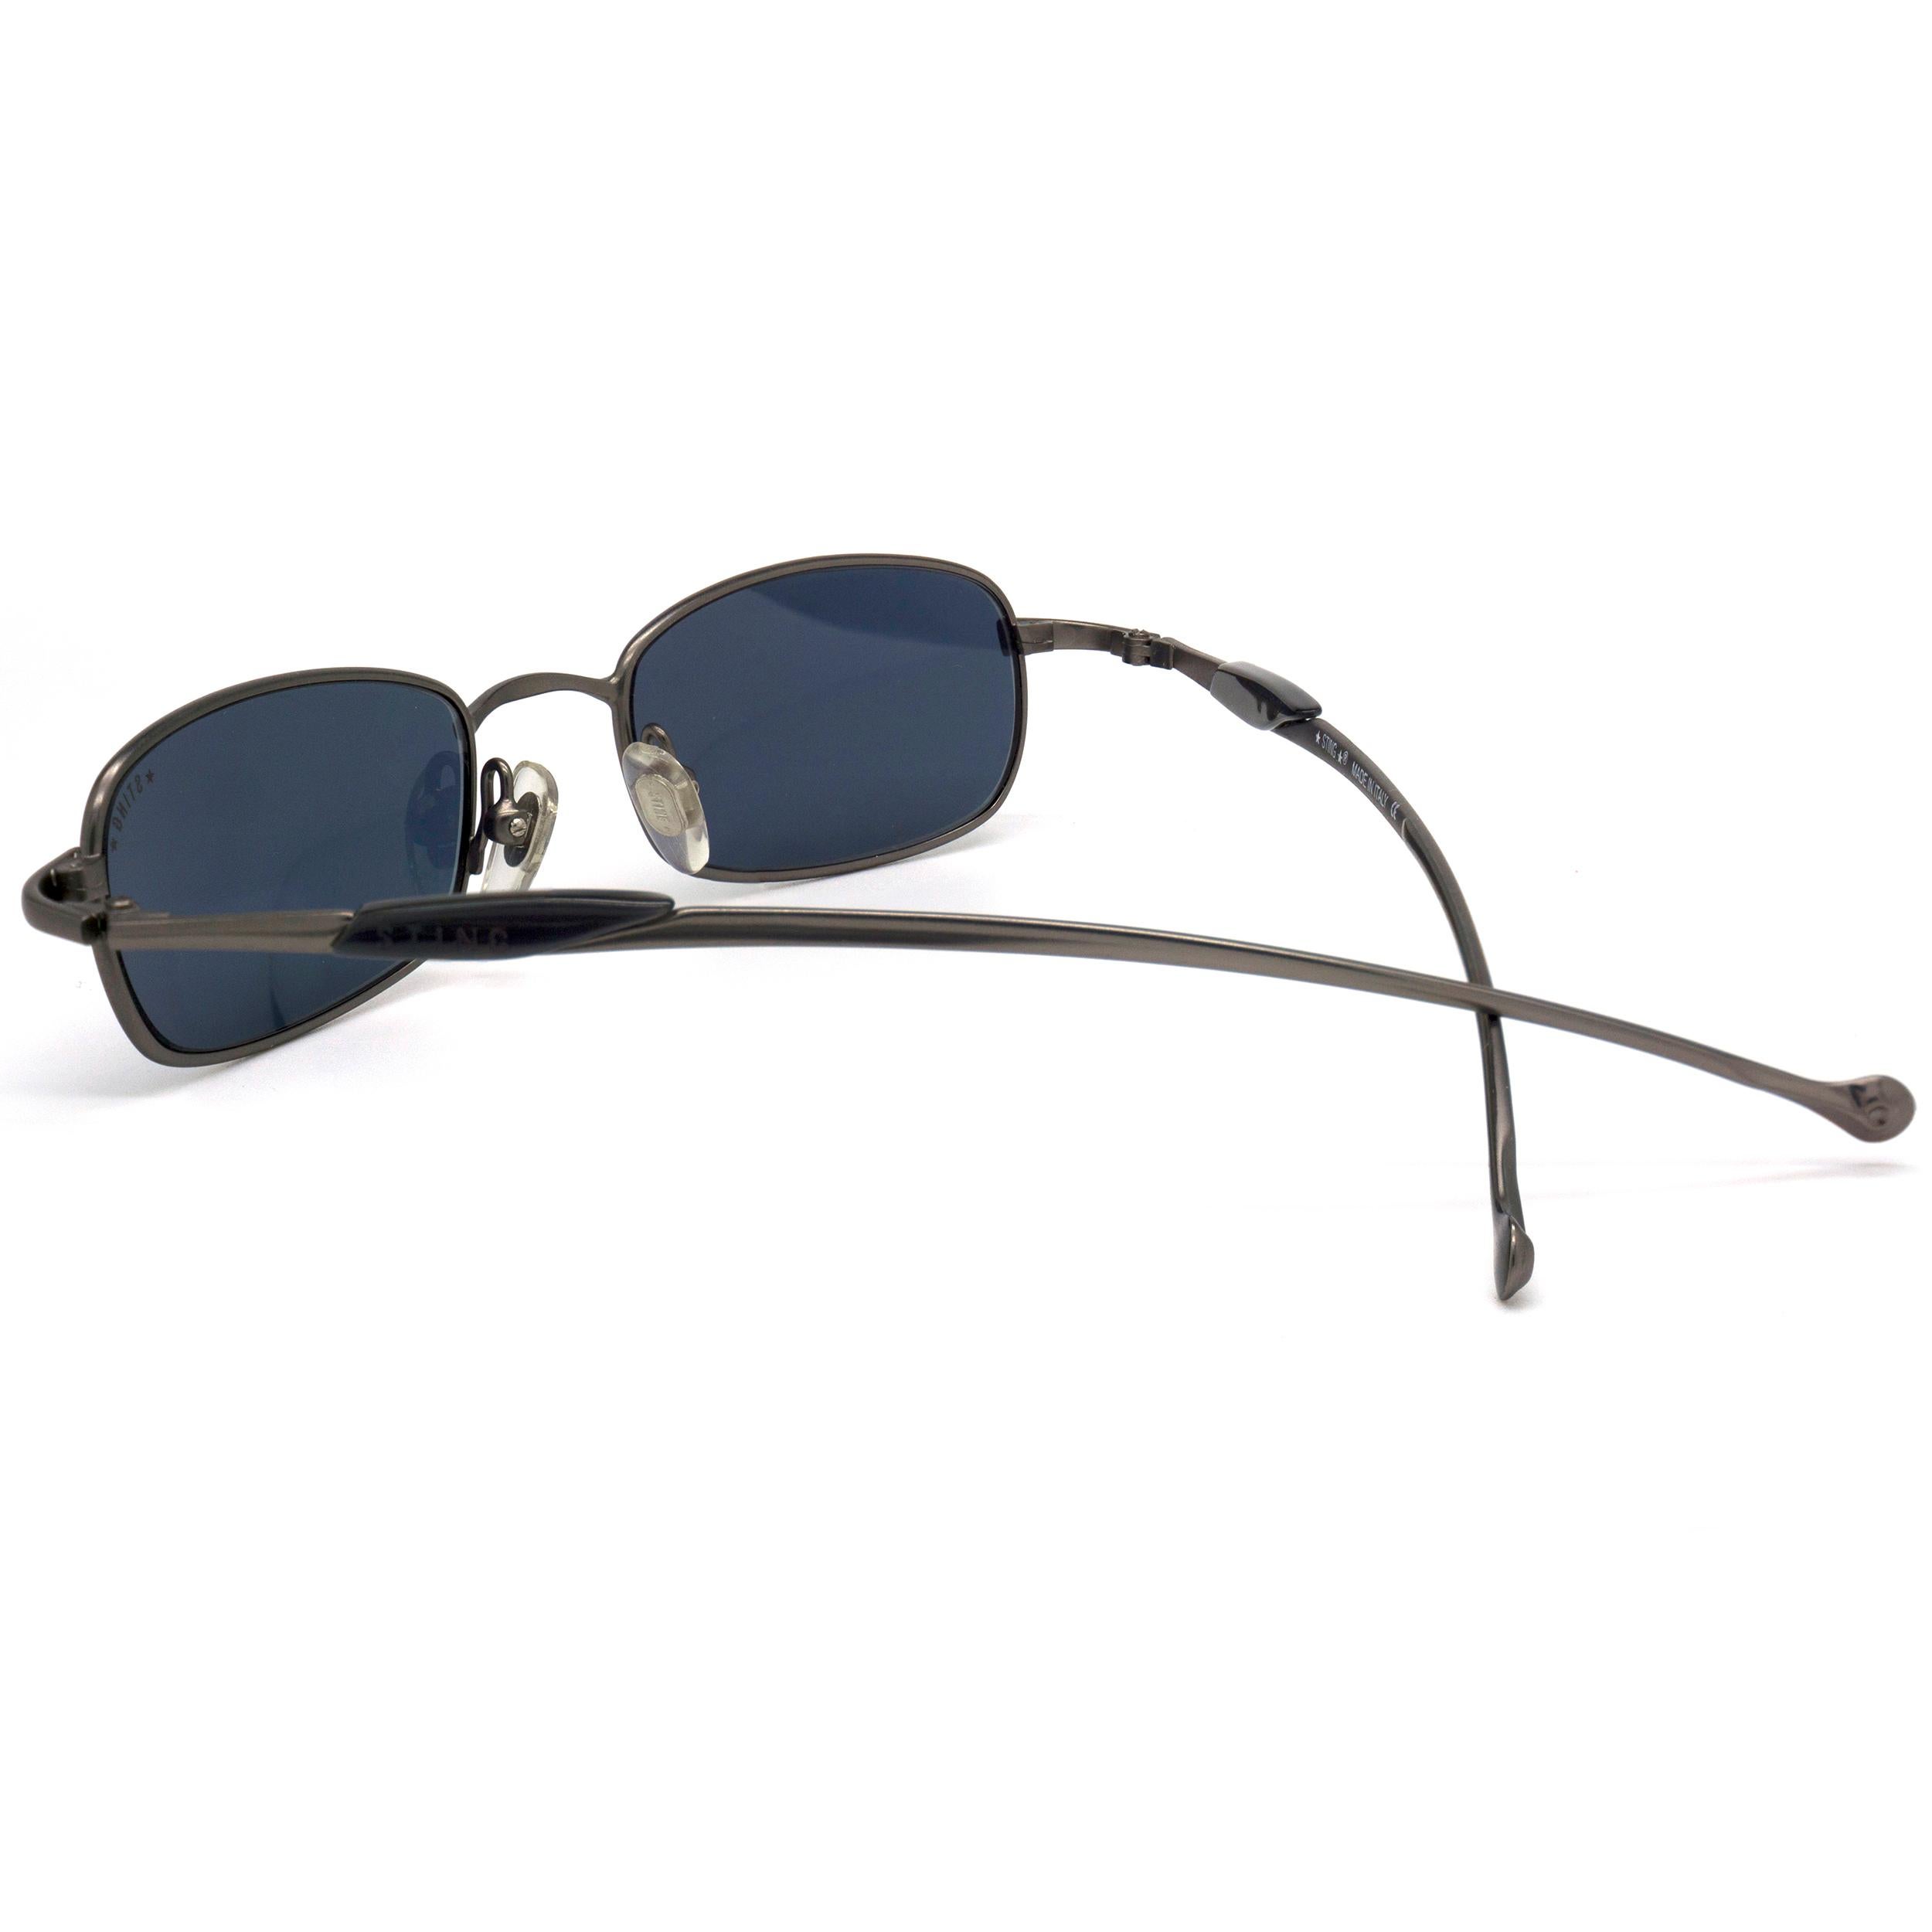 Black Sting vintage sunglasses slim